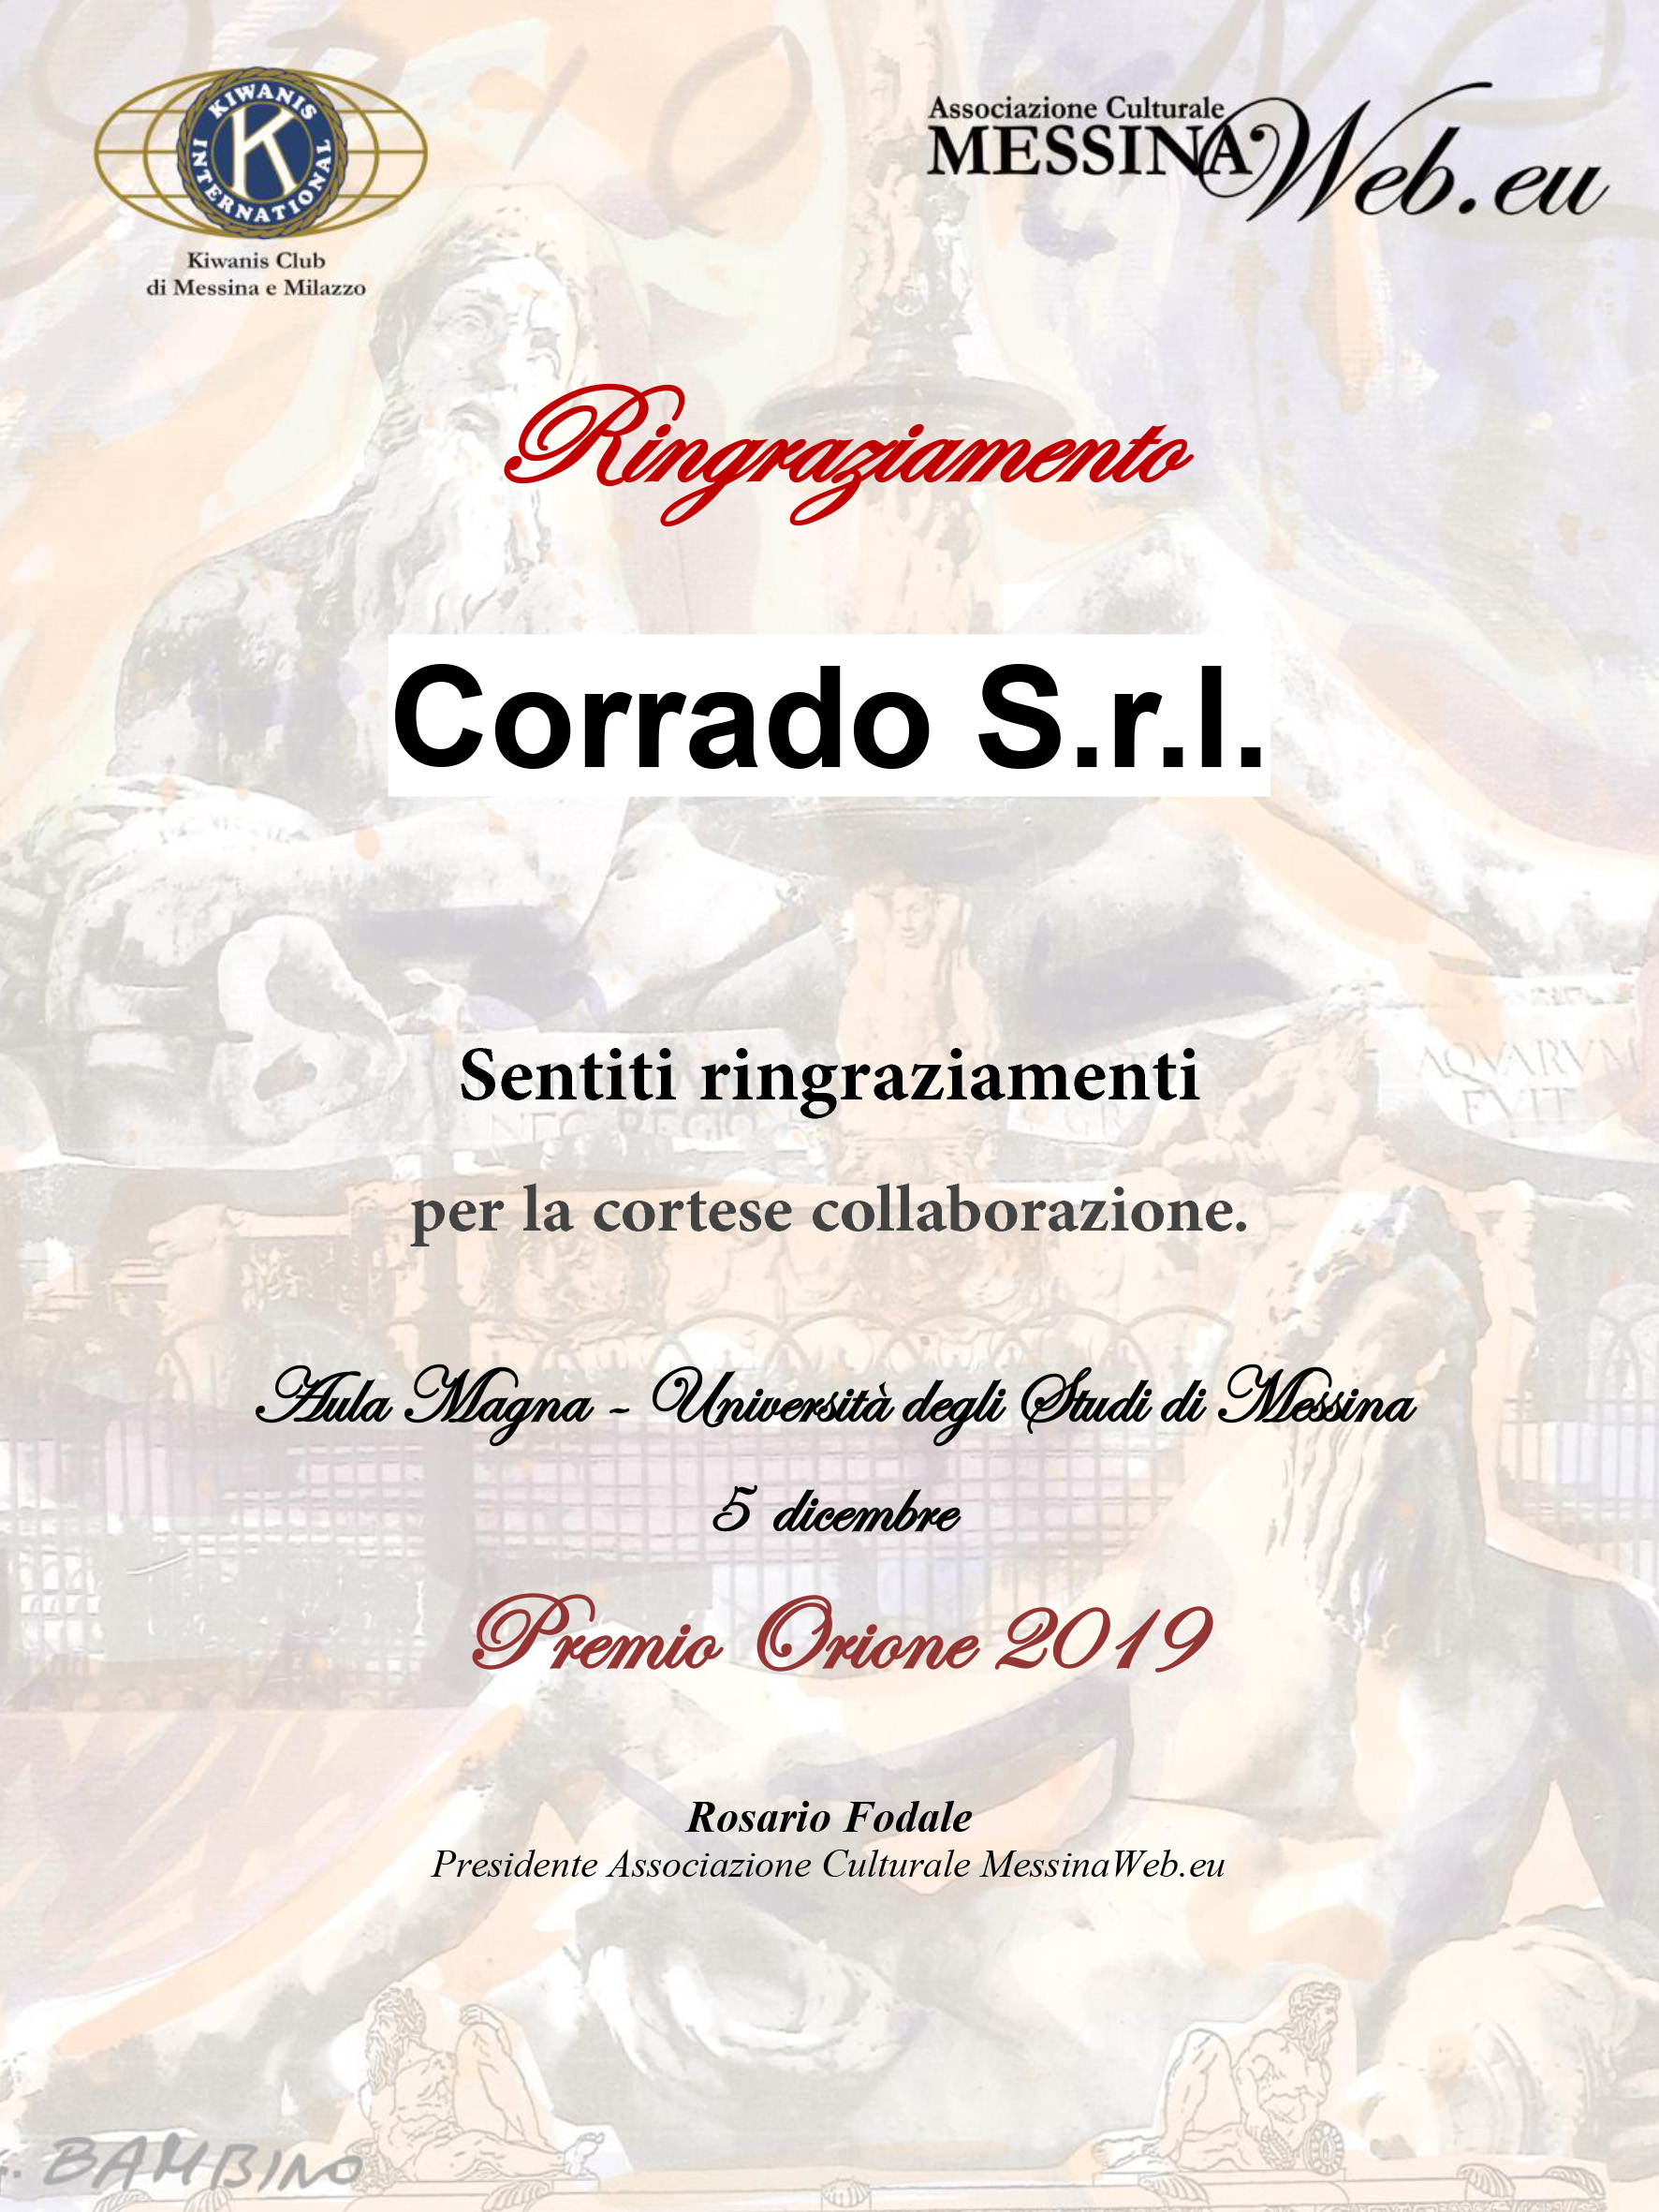 Corrado S.r